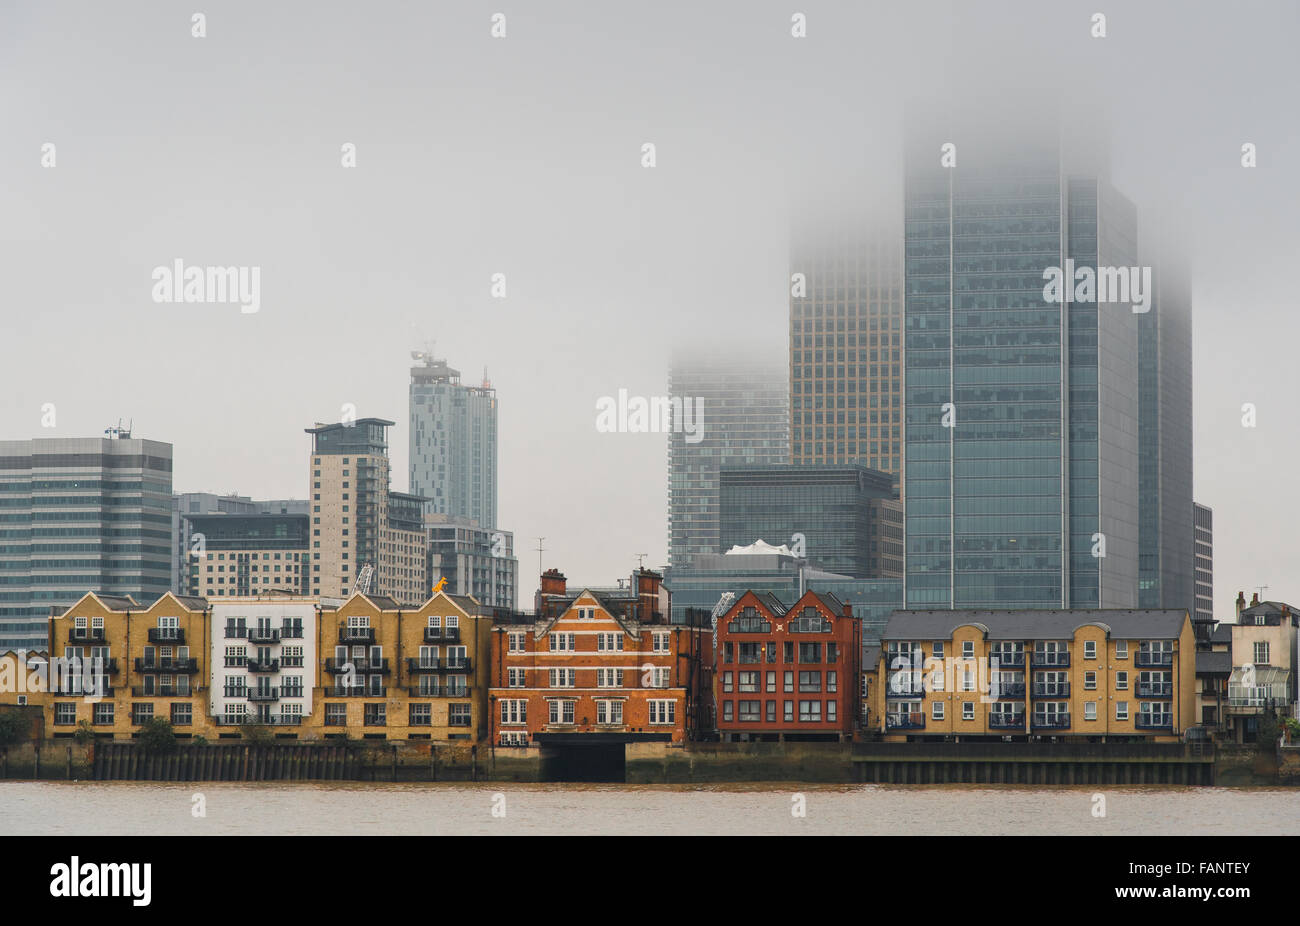 Vue panoramique sur les toits de la ville de Londres dans le quartier des affaires Canary Wharf Banque D'Images